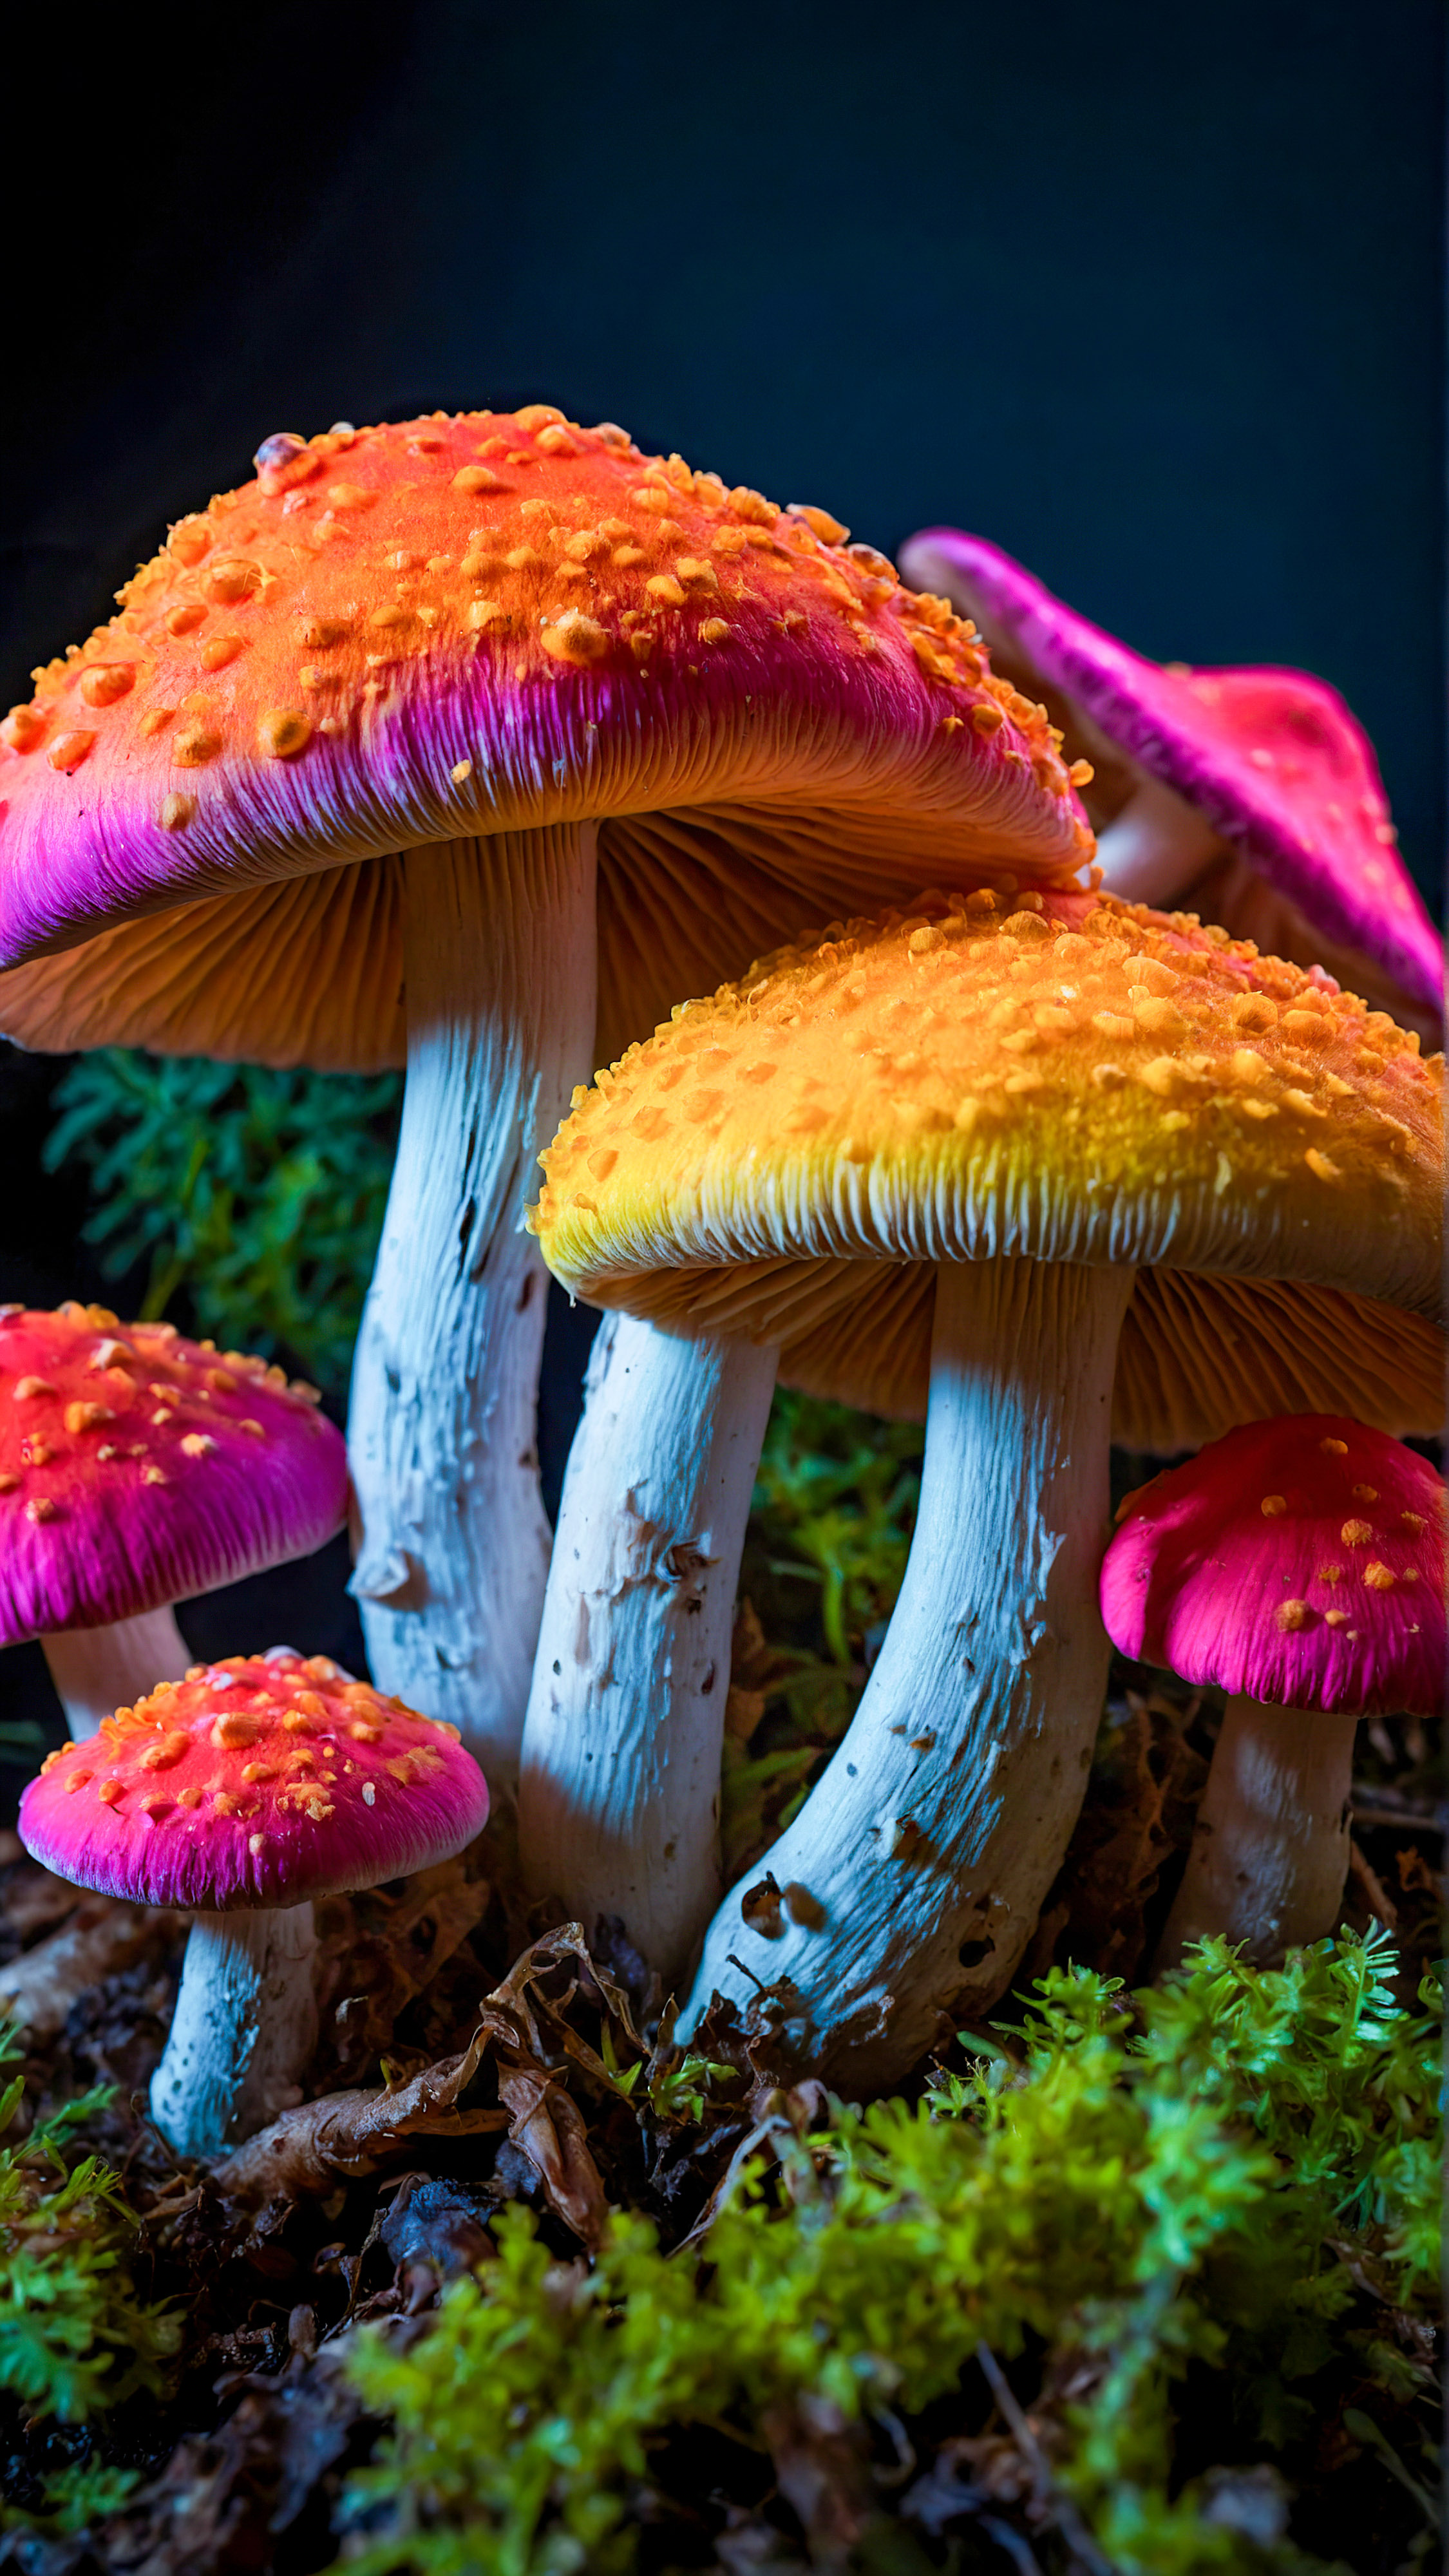 Laissez-vous hypnotiser par nos superbes fonds d'écran 4K pour iPhone, présentant un groupe de champignons aux couleurs vives et néon sur un arrière-plan sombre, créant un effet visuellement frappant et surréaliste. 